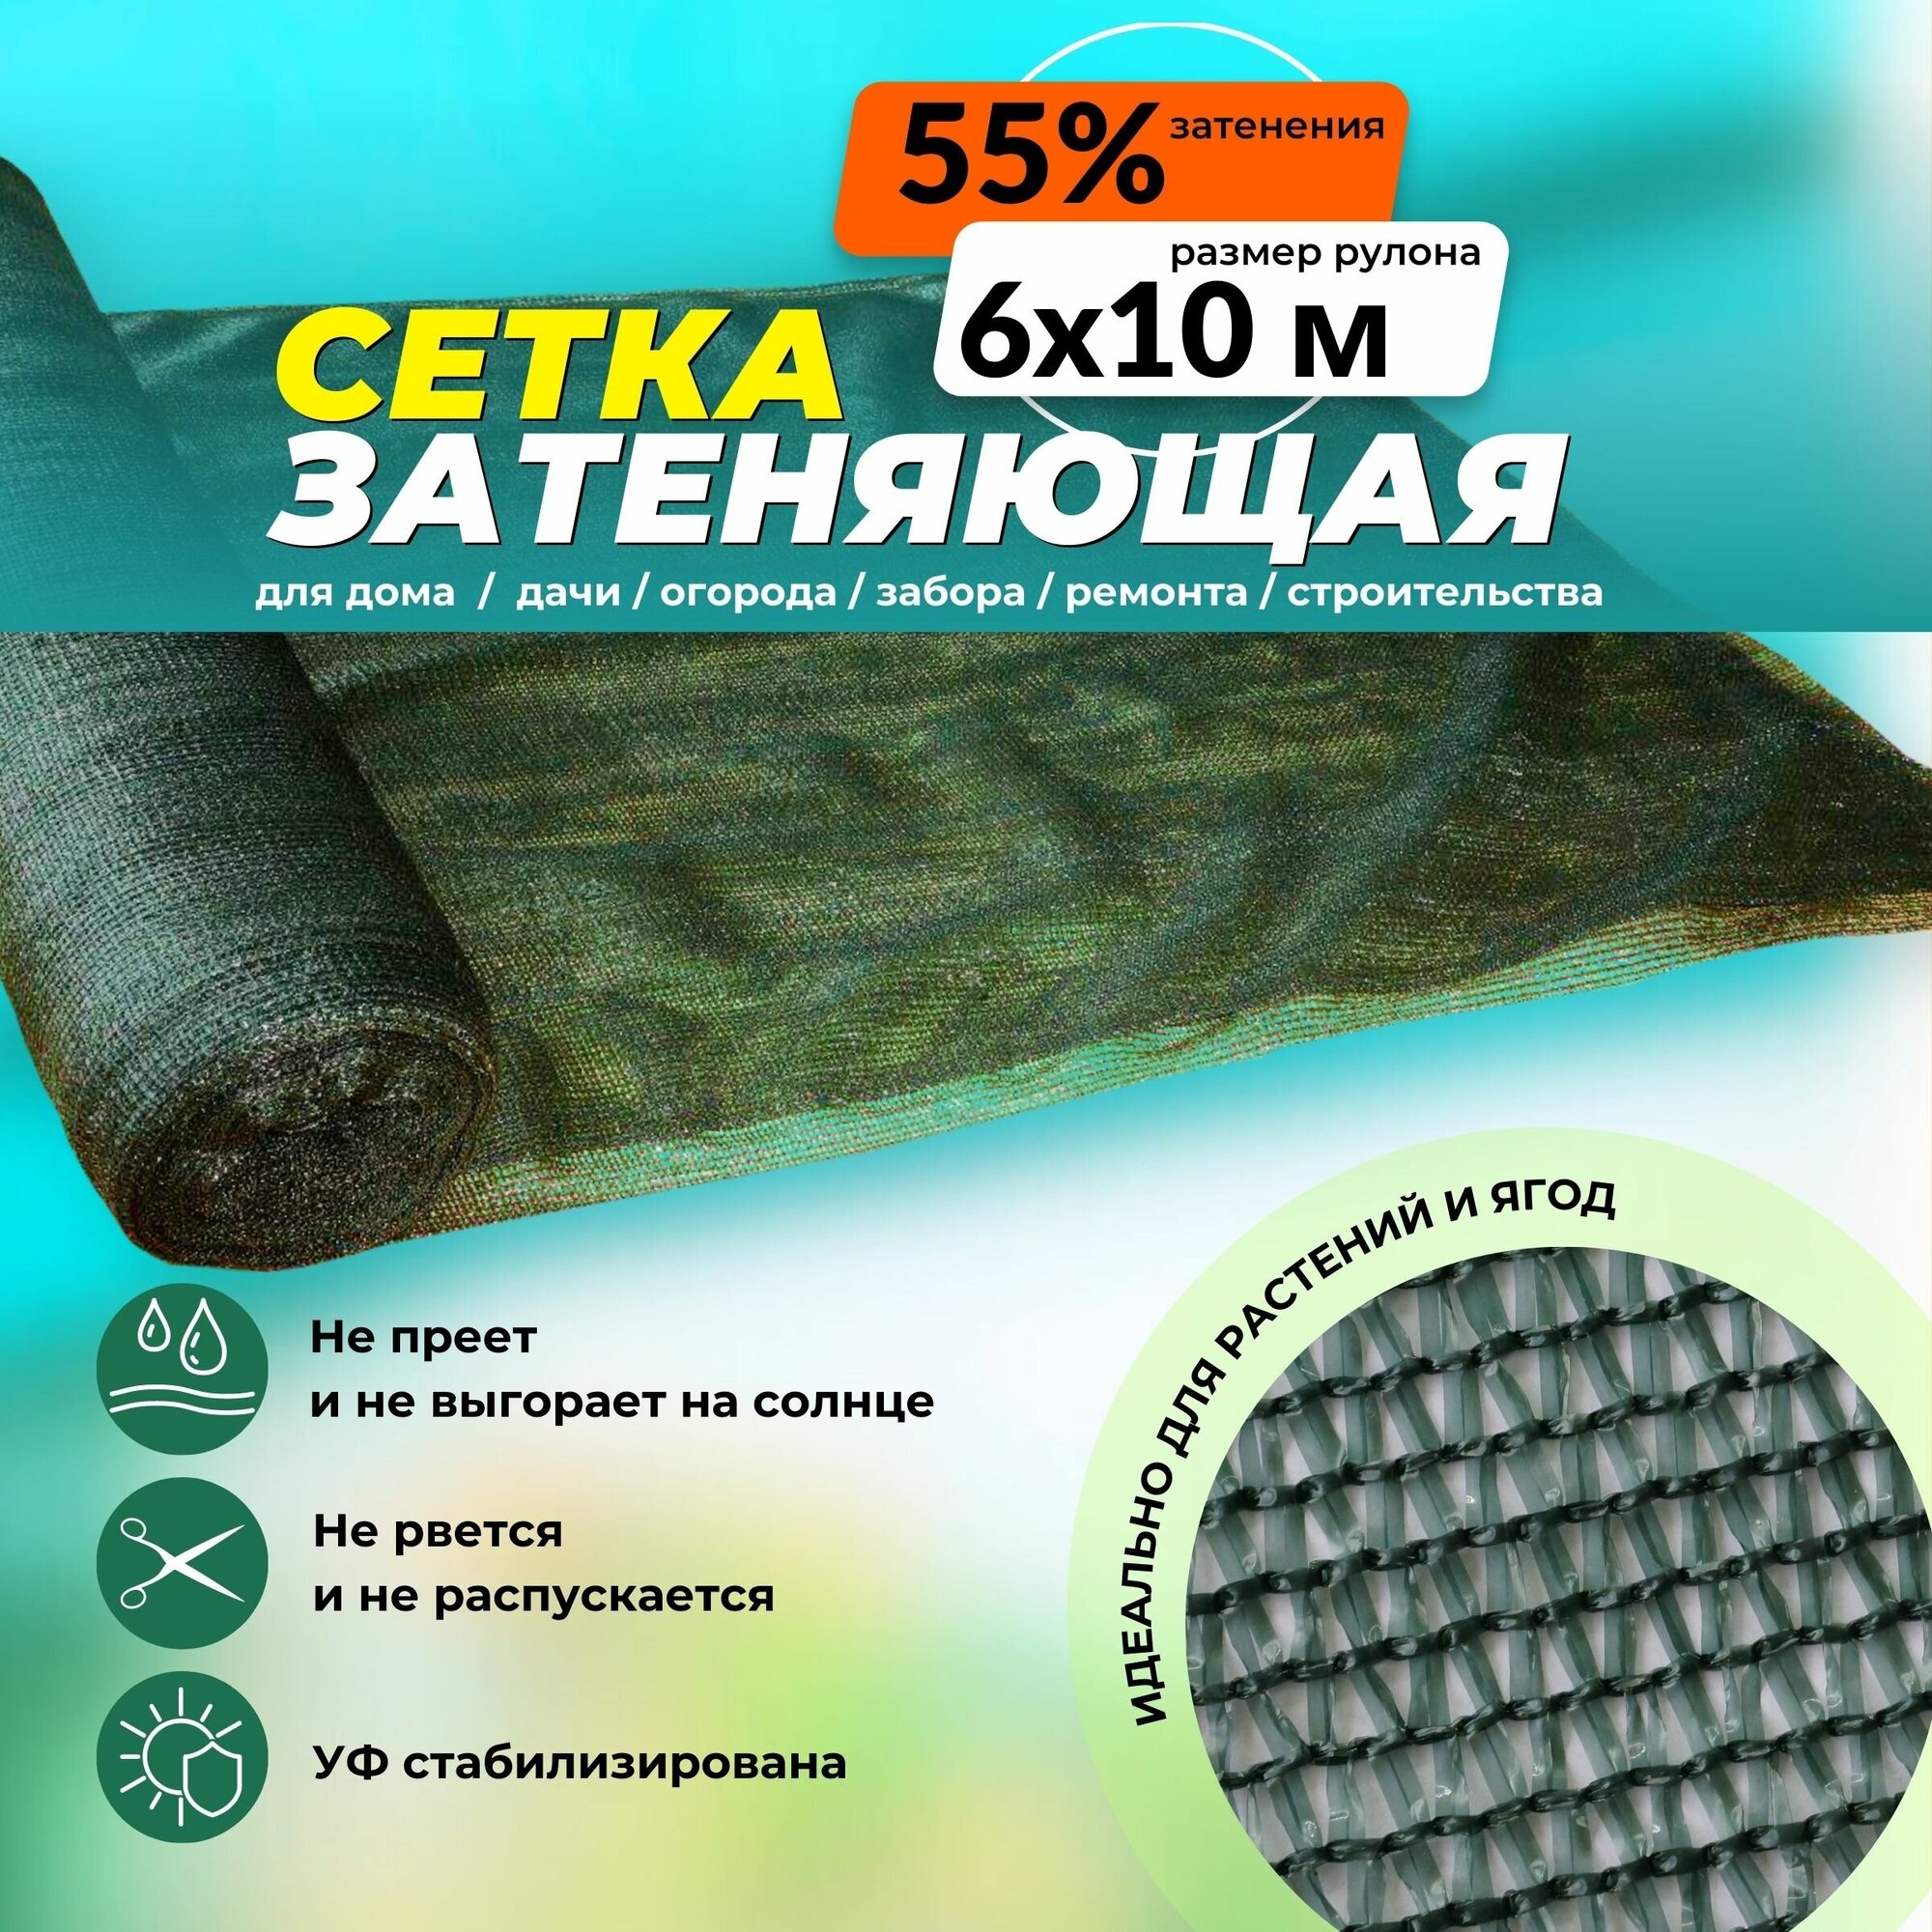 Сетка затеняющая зеленая 50% Промышленник 6х10 м